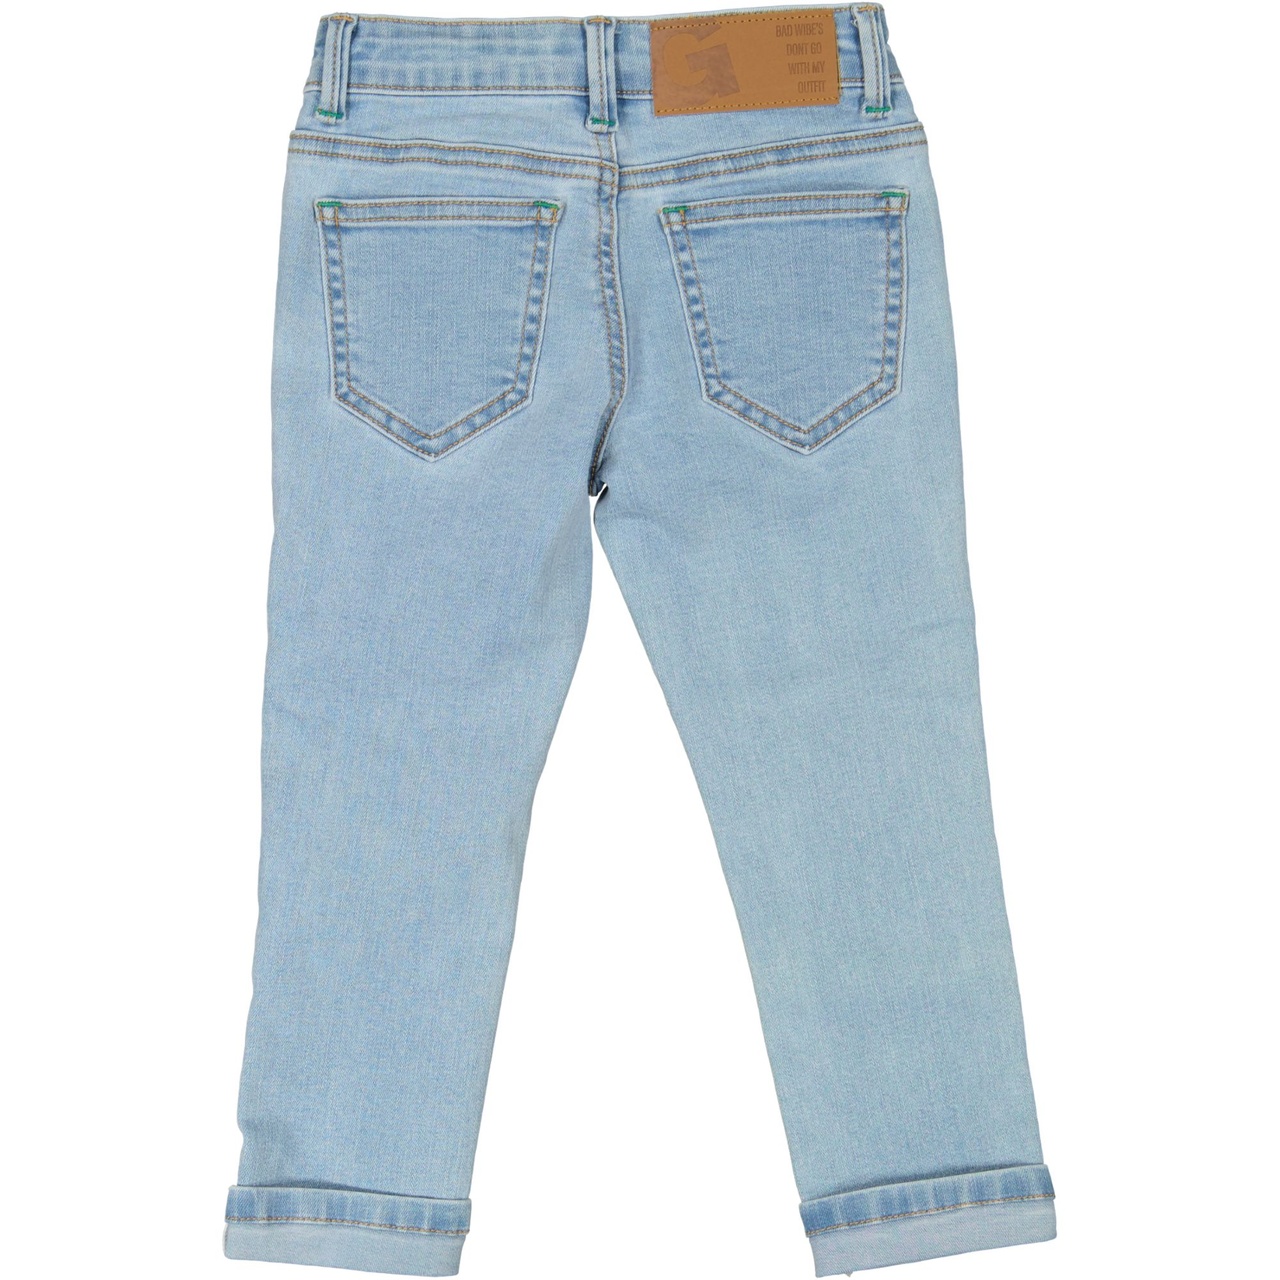 Unisex 5-pocket jeans Denim l.blue wash